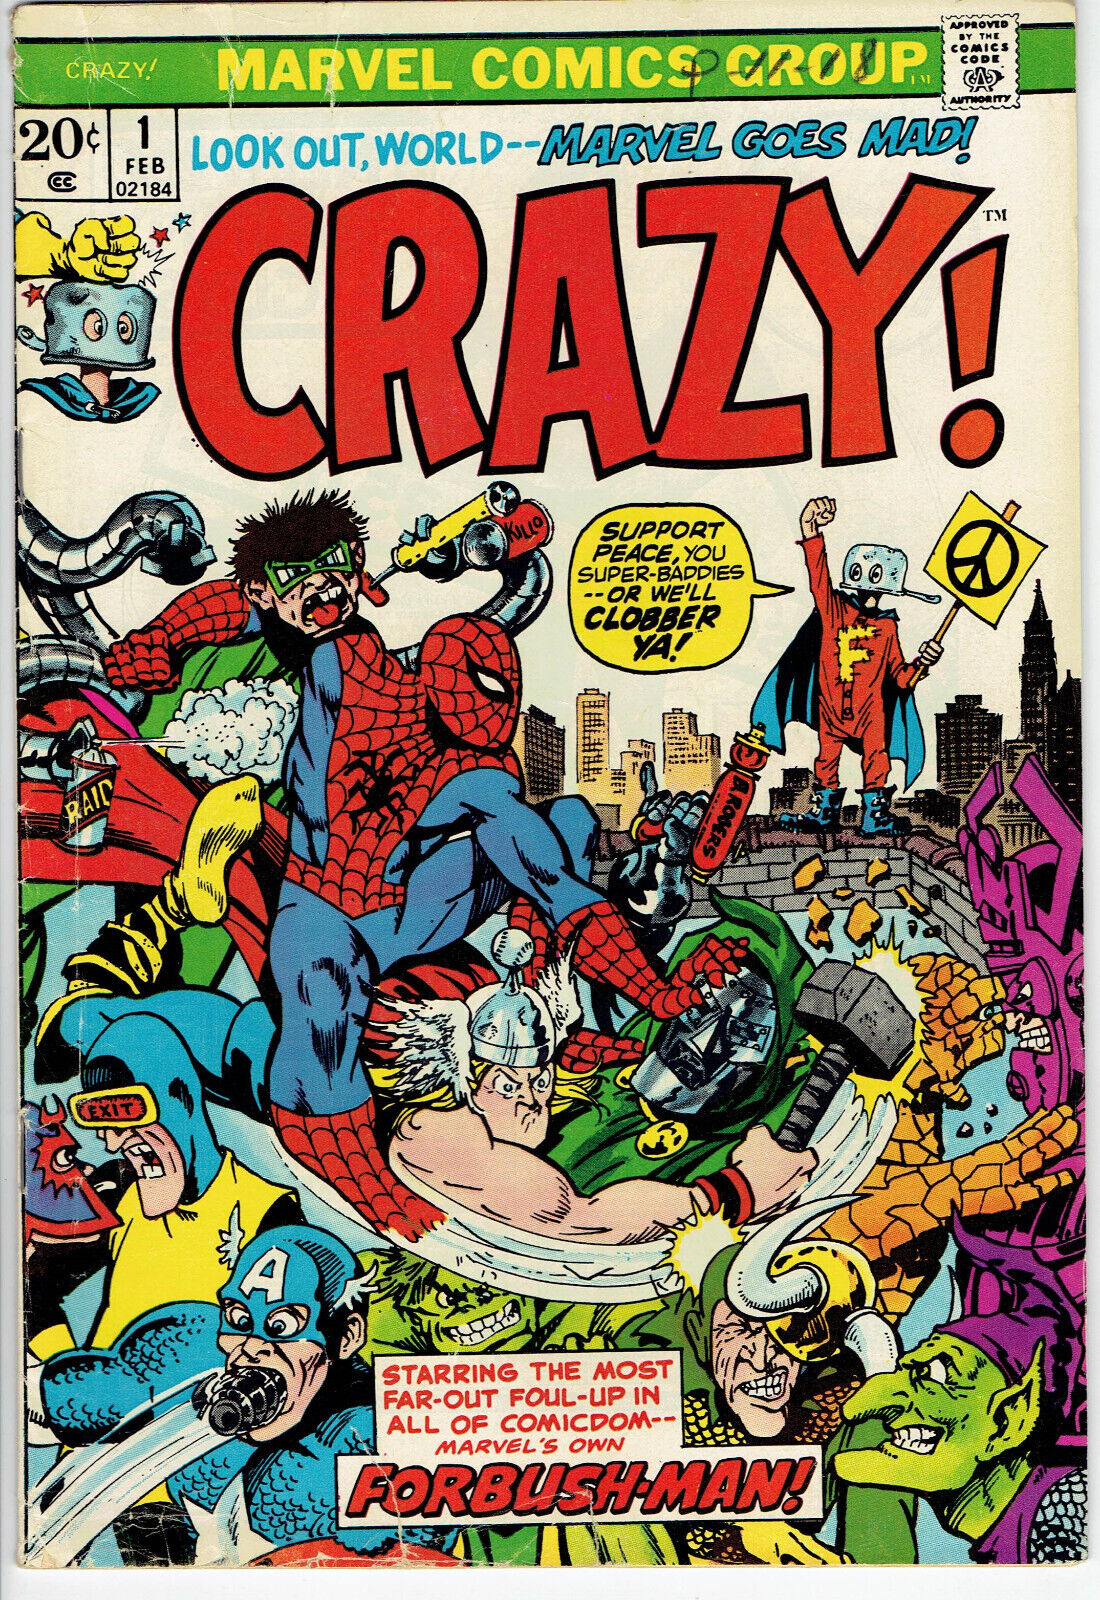 CRAZY #1 Feb. 1973 Marvel Comics Book GD/VG 3.0